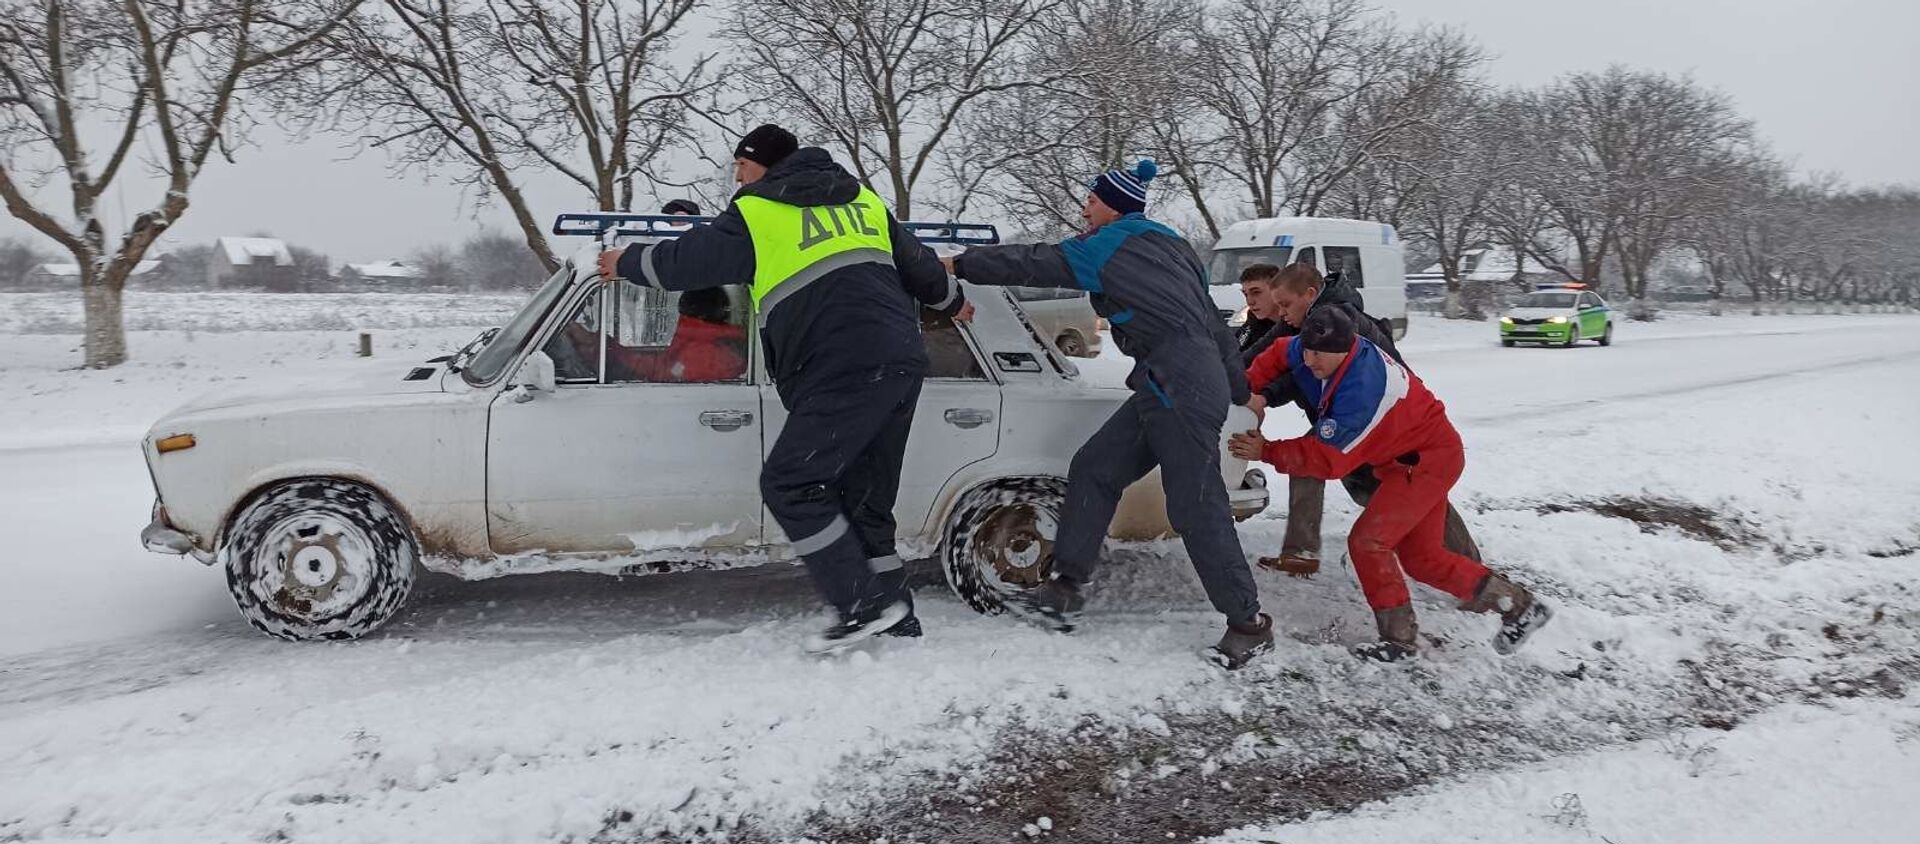  Приднестровье занесло снегом. Гололедица на дорогах - причина многих аварий - Sputnik Молдова, 1920, 13.01.2021